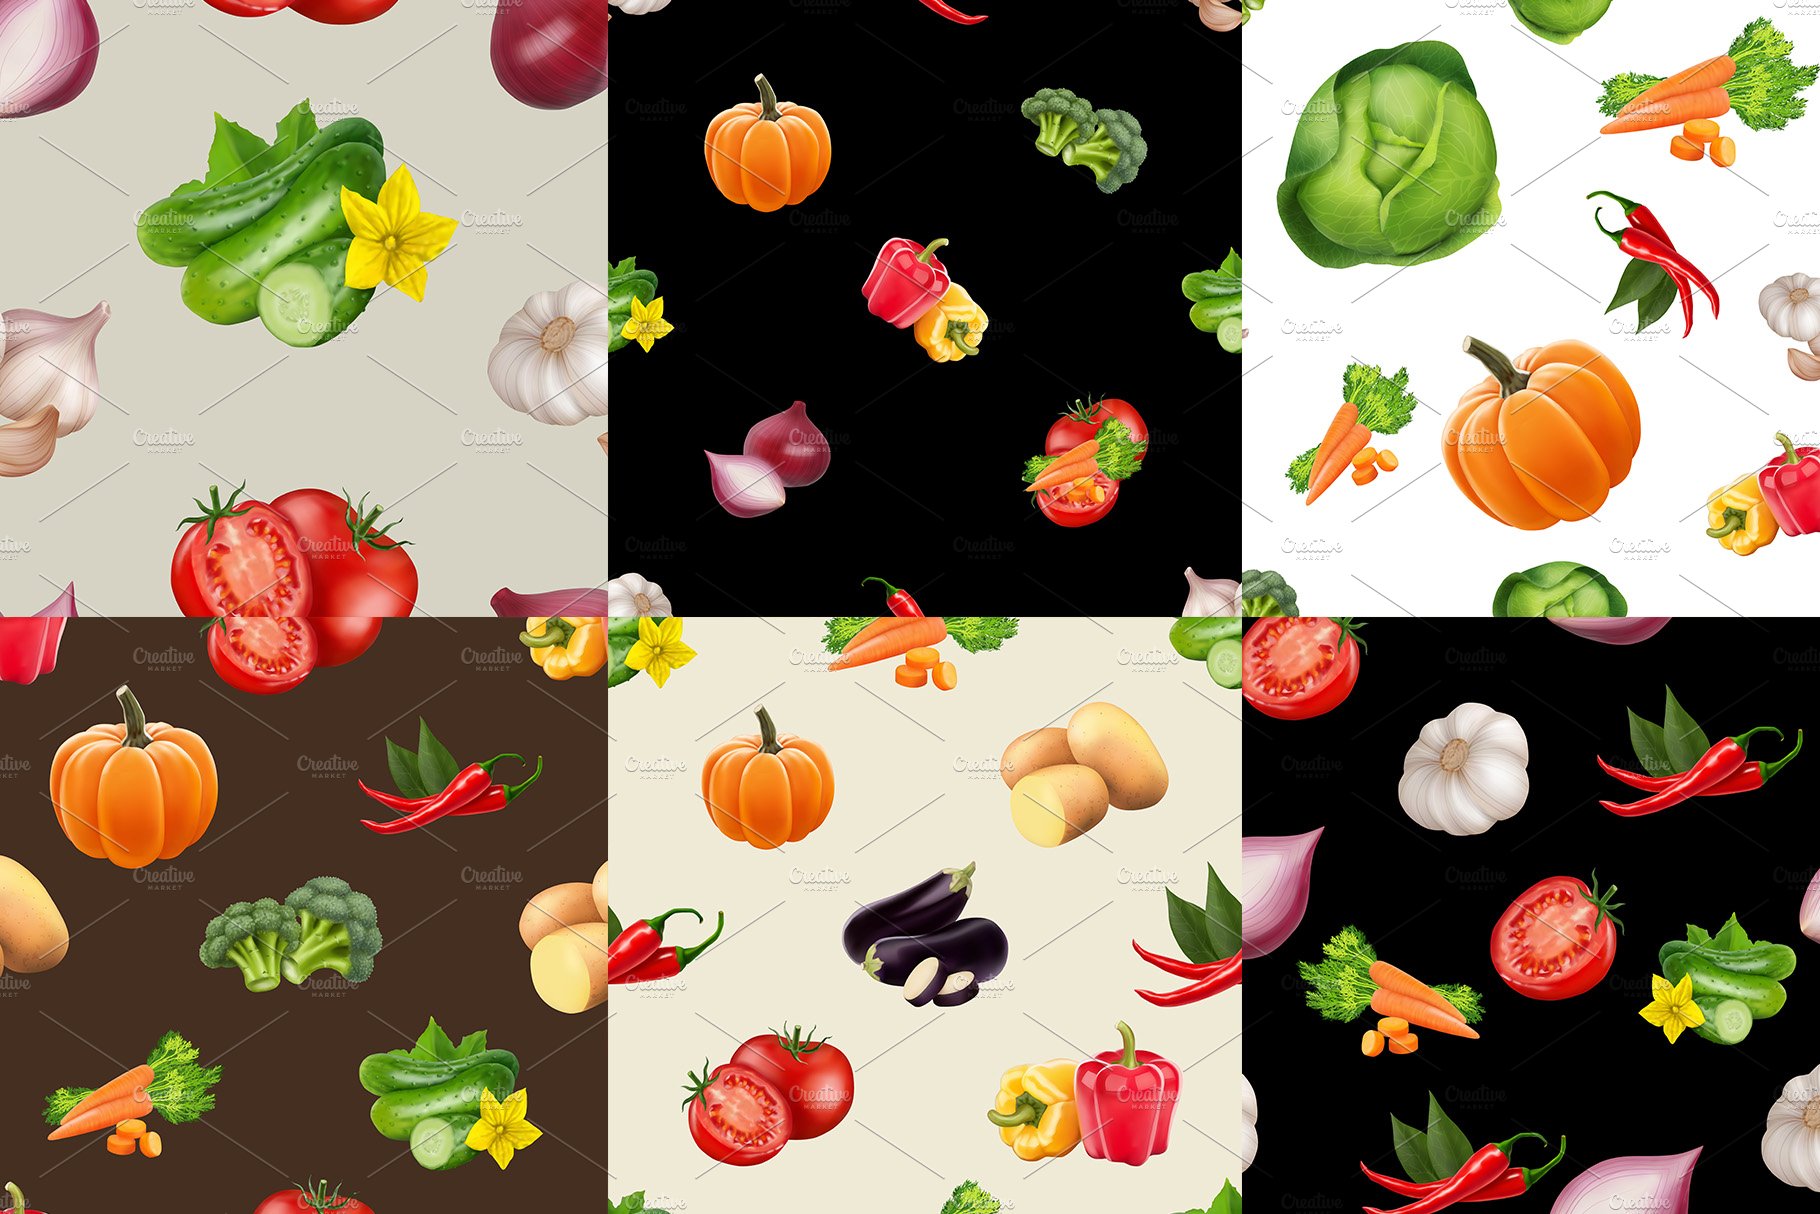 Big vegetables patterns set preview image.